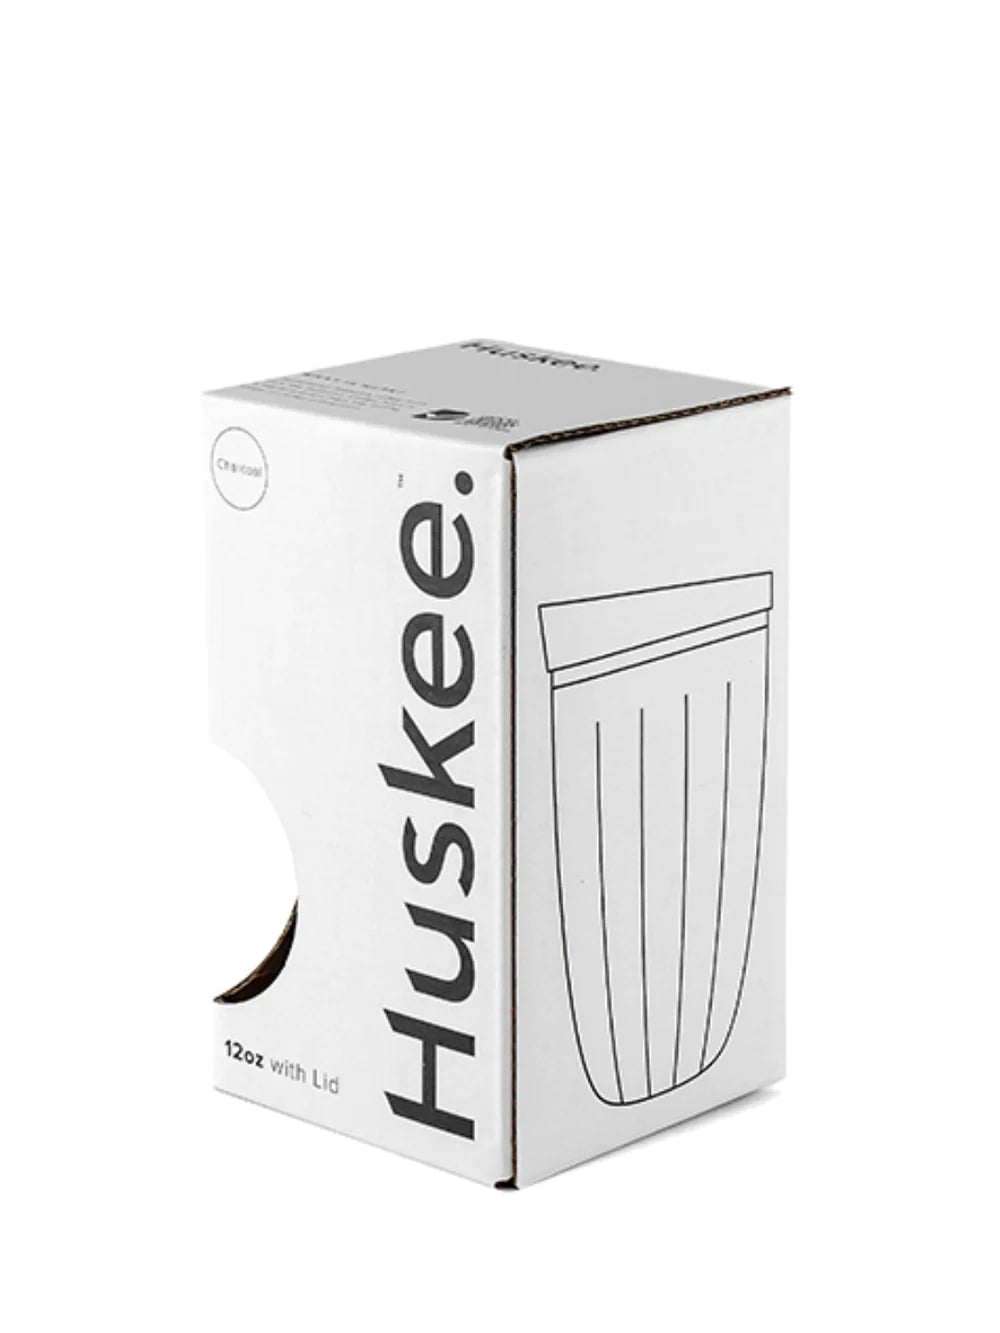  Tasse HUSKEE + couvercle (12oz/355ml) (zéro déchet) wiltor cafe